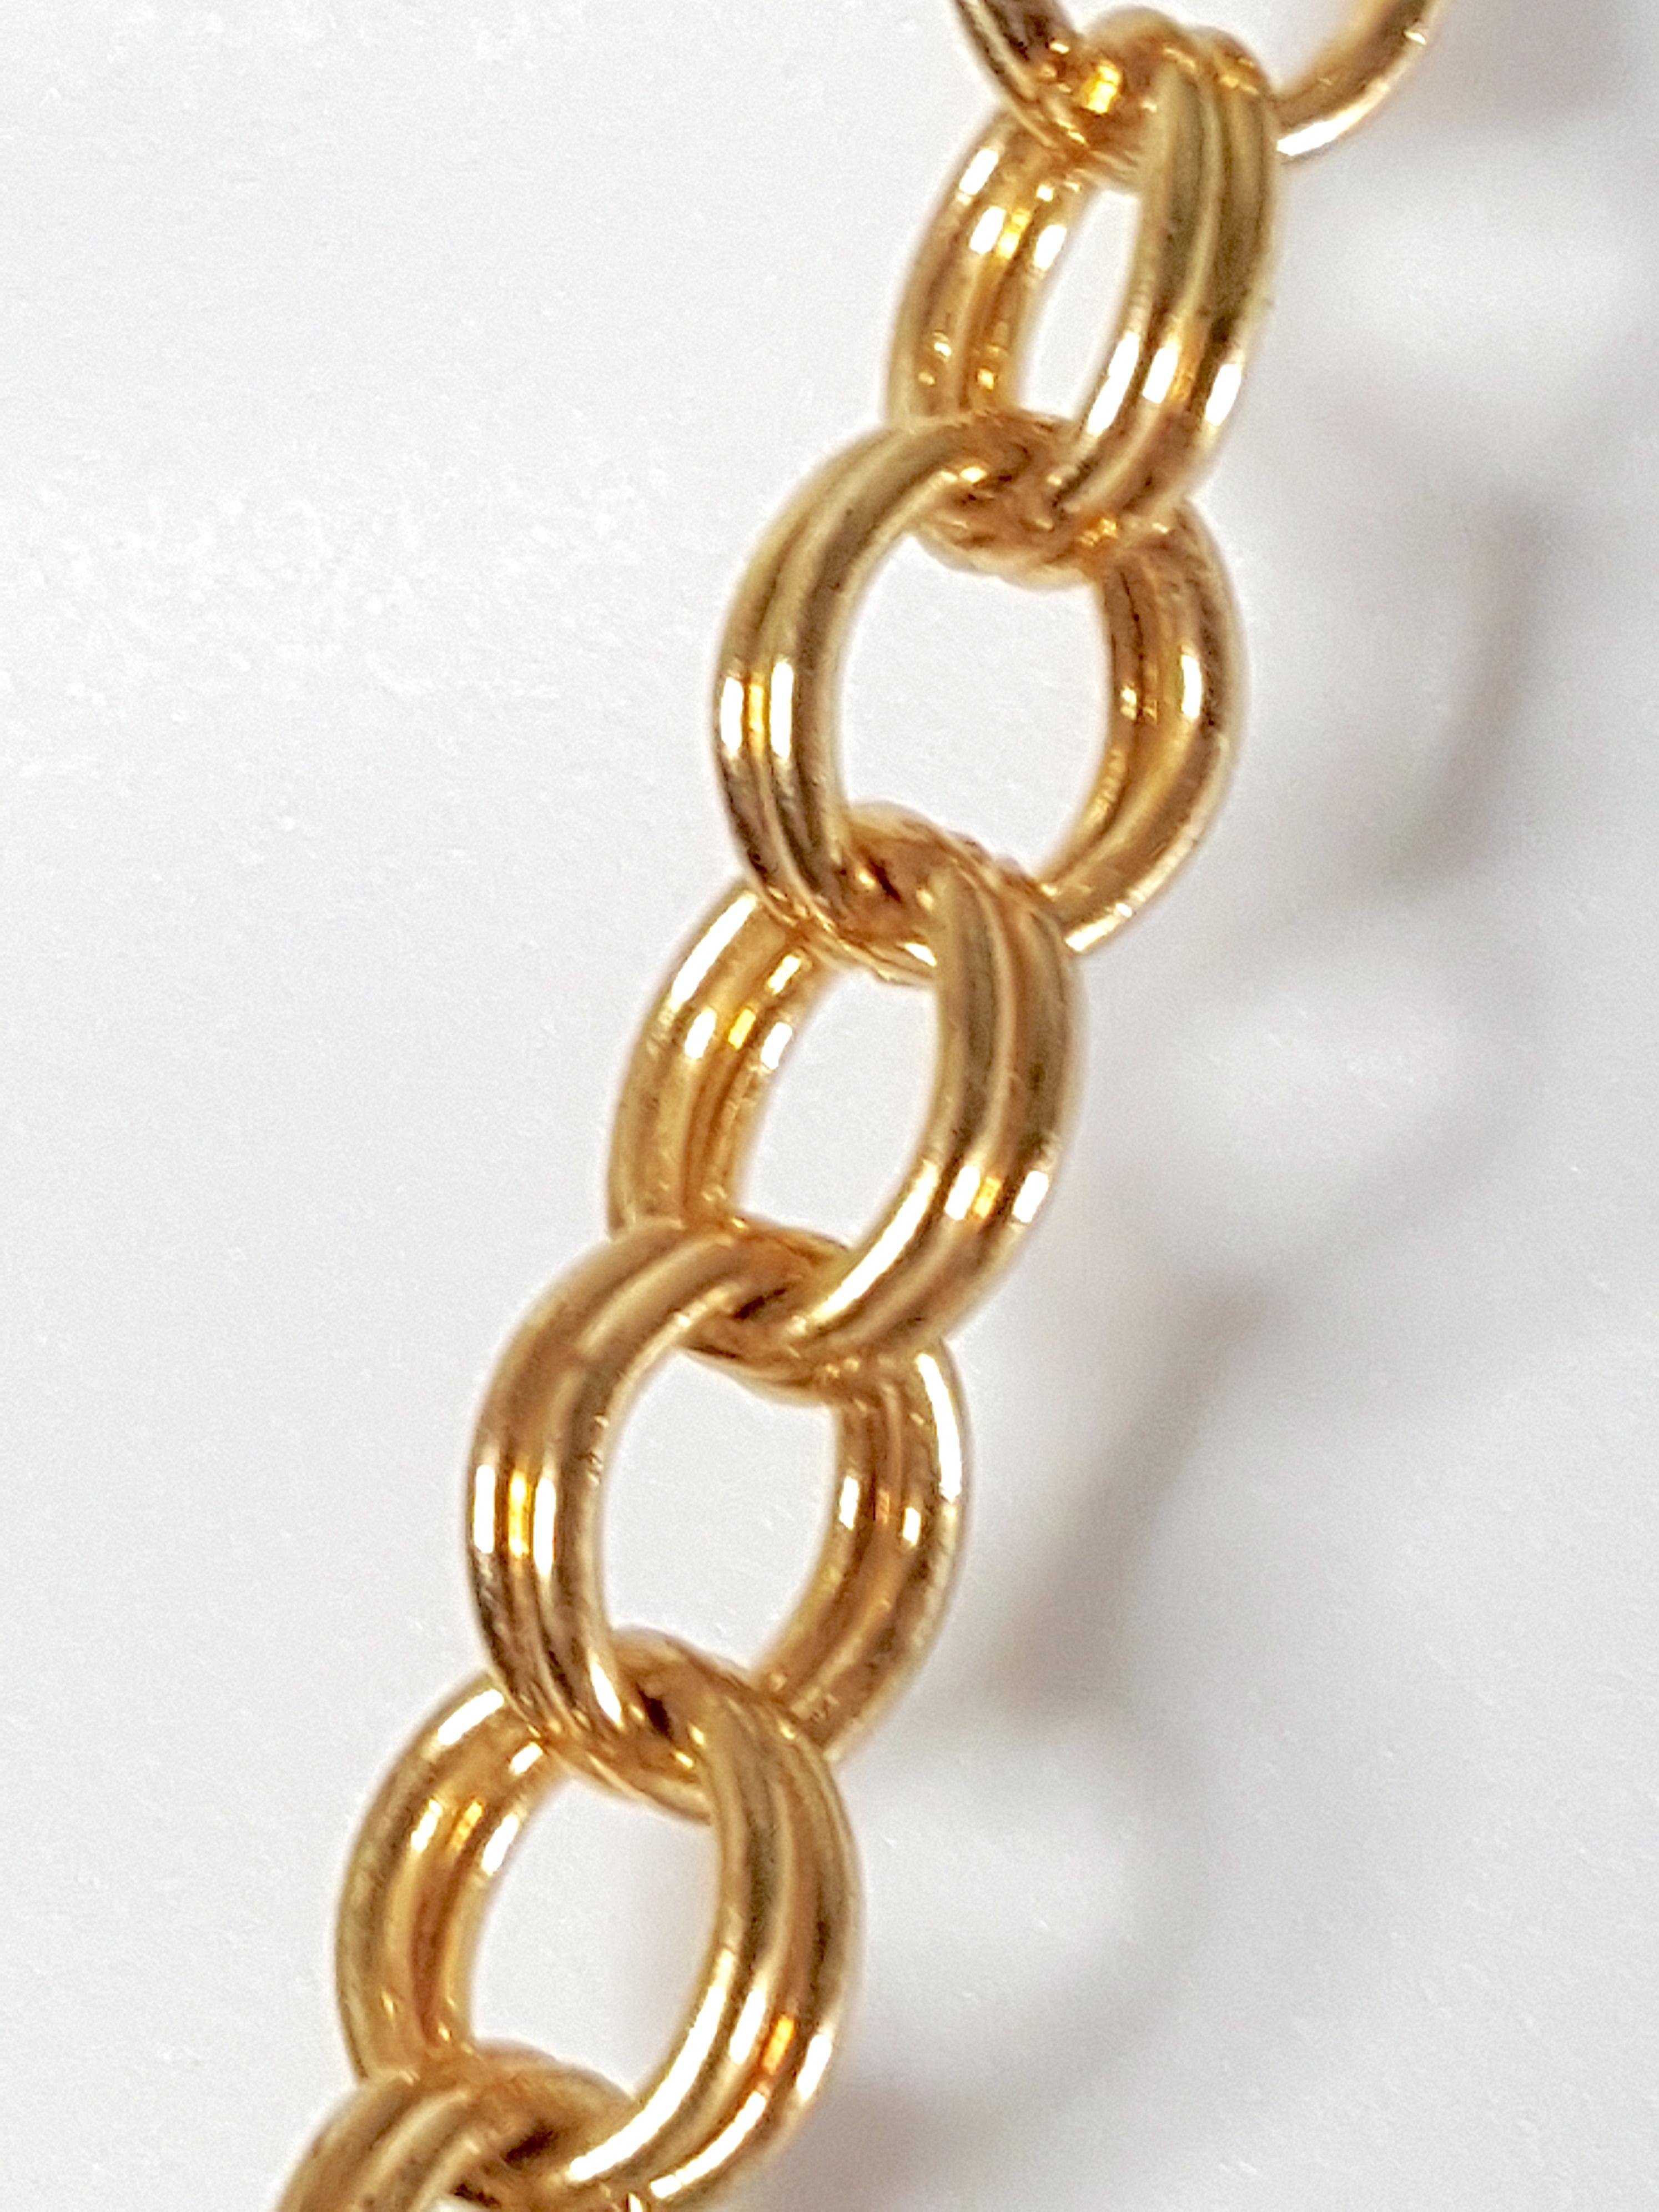 Women's or Men's Bakelite 1930s German ArtDeco GoldRinged EmeraldBallPendants ChainLink Necklace For Sale